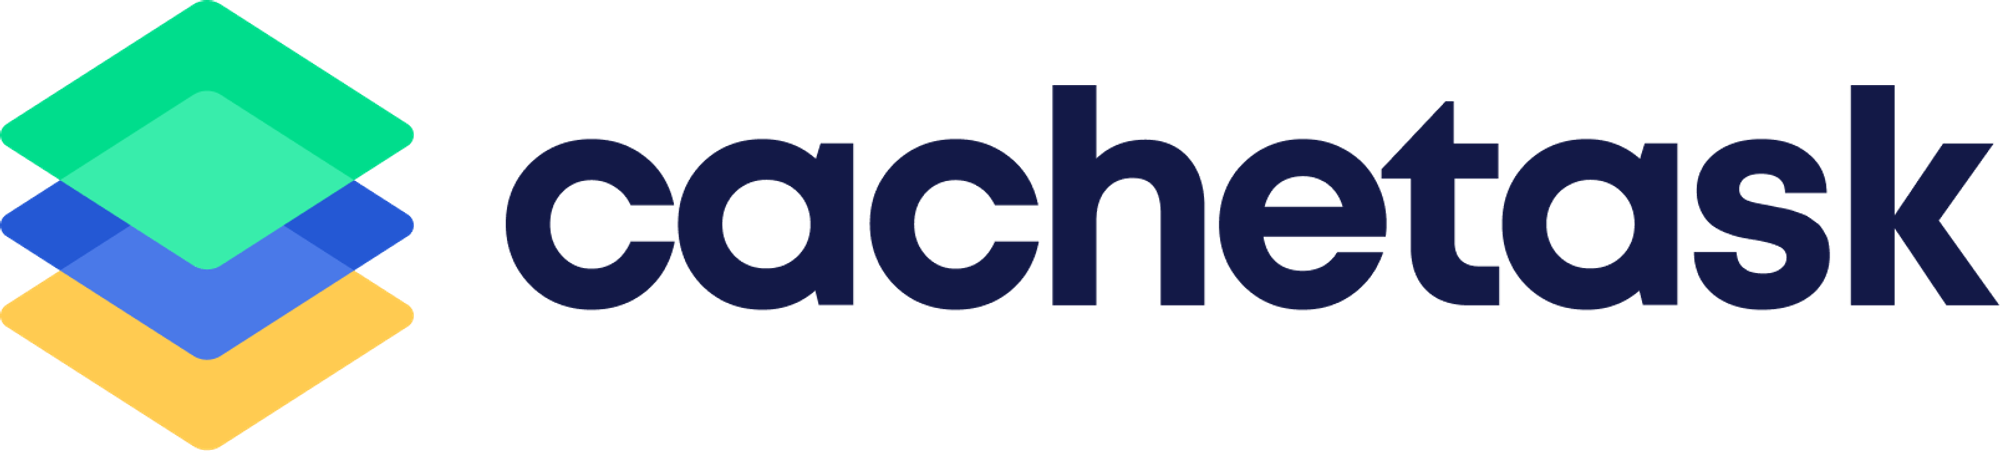 Modern logo design for cachetask.com